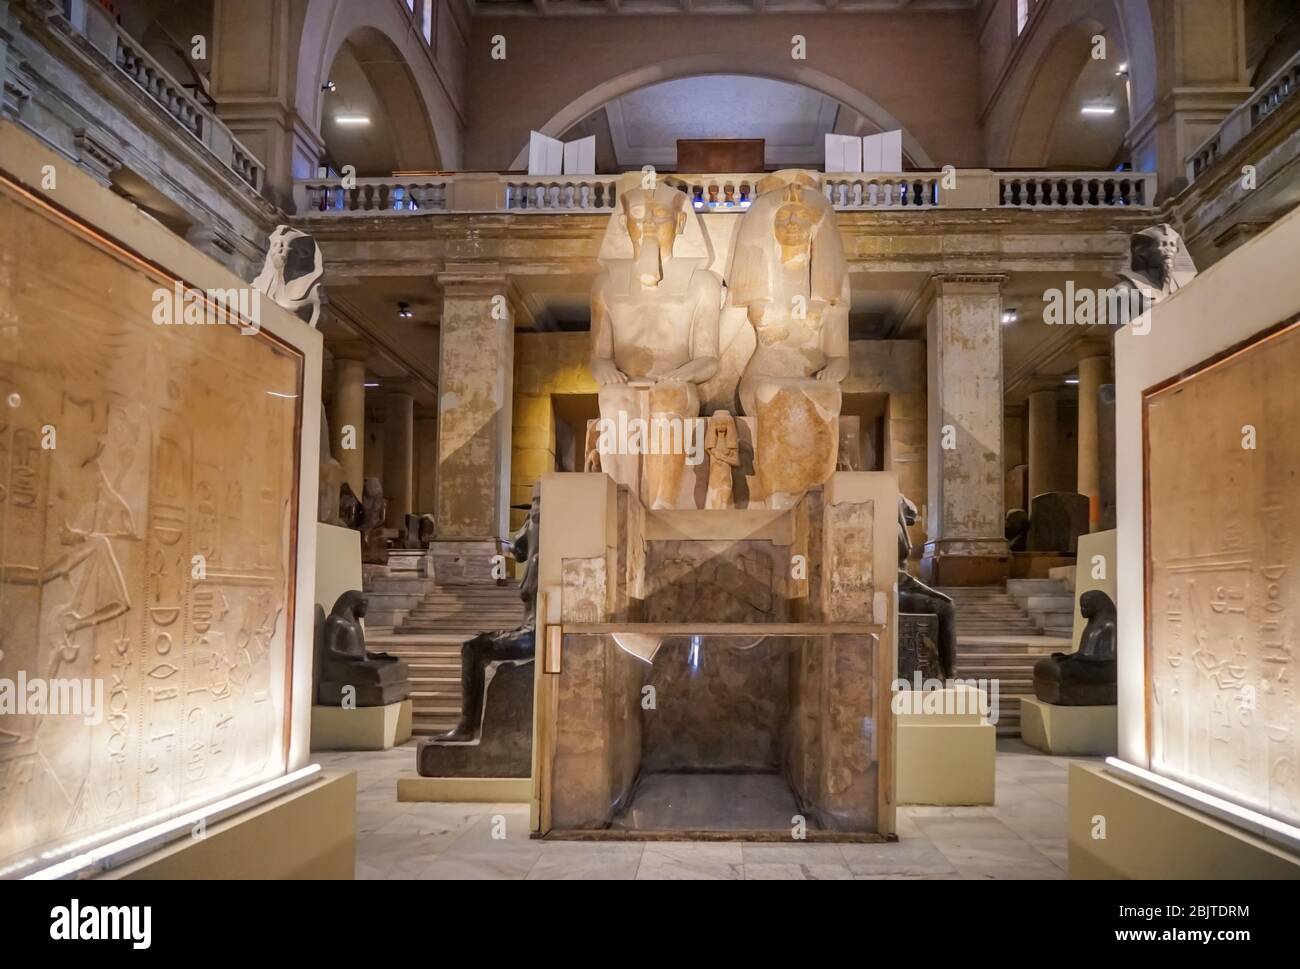 CAIRO, EGITTO - 19 NOVEMBRE 2017: Statue monumentali di Amenhotep III e la regina Tiye nel Museo delle Antichità Egizie Foto Stock